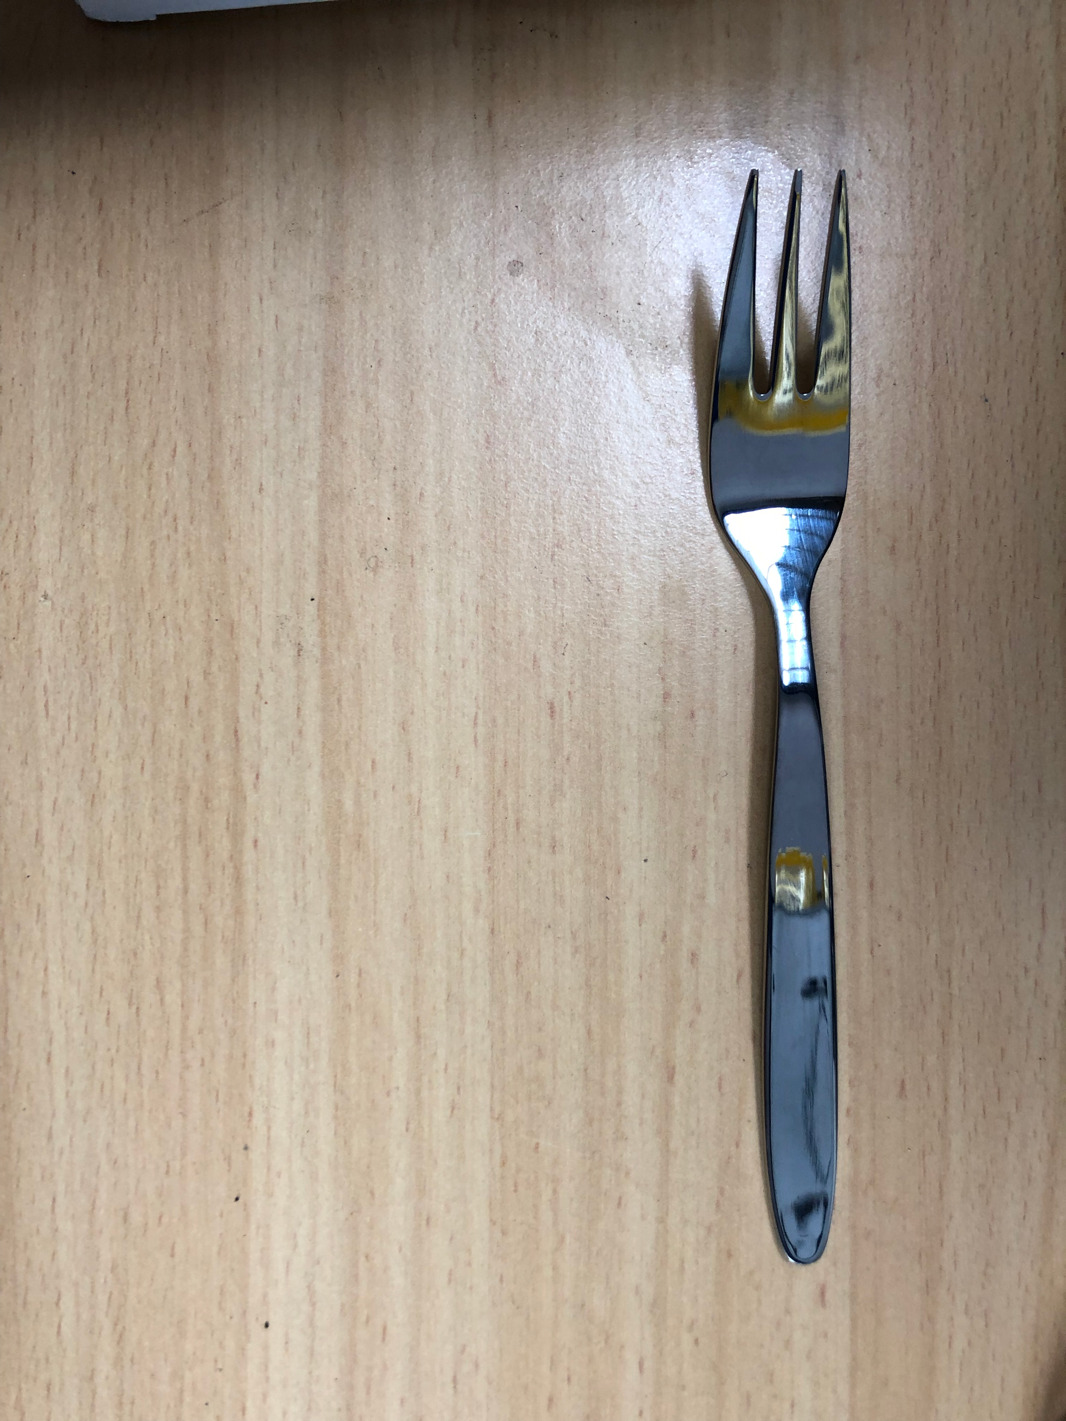 G 116-8 Besteck Gabel,Messer,Löffel,Kaffeelöffel,Kuchengabel-Neu ( noch verpackt )